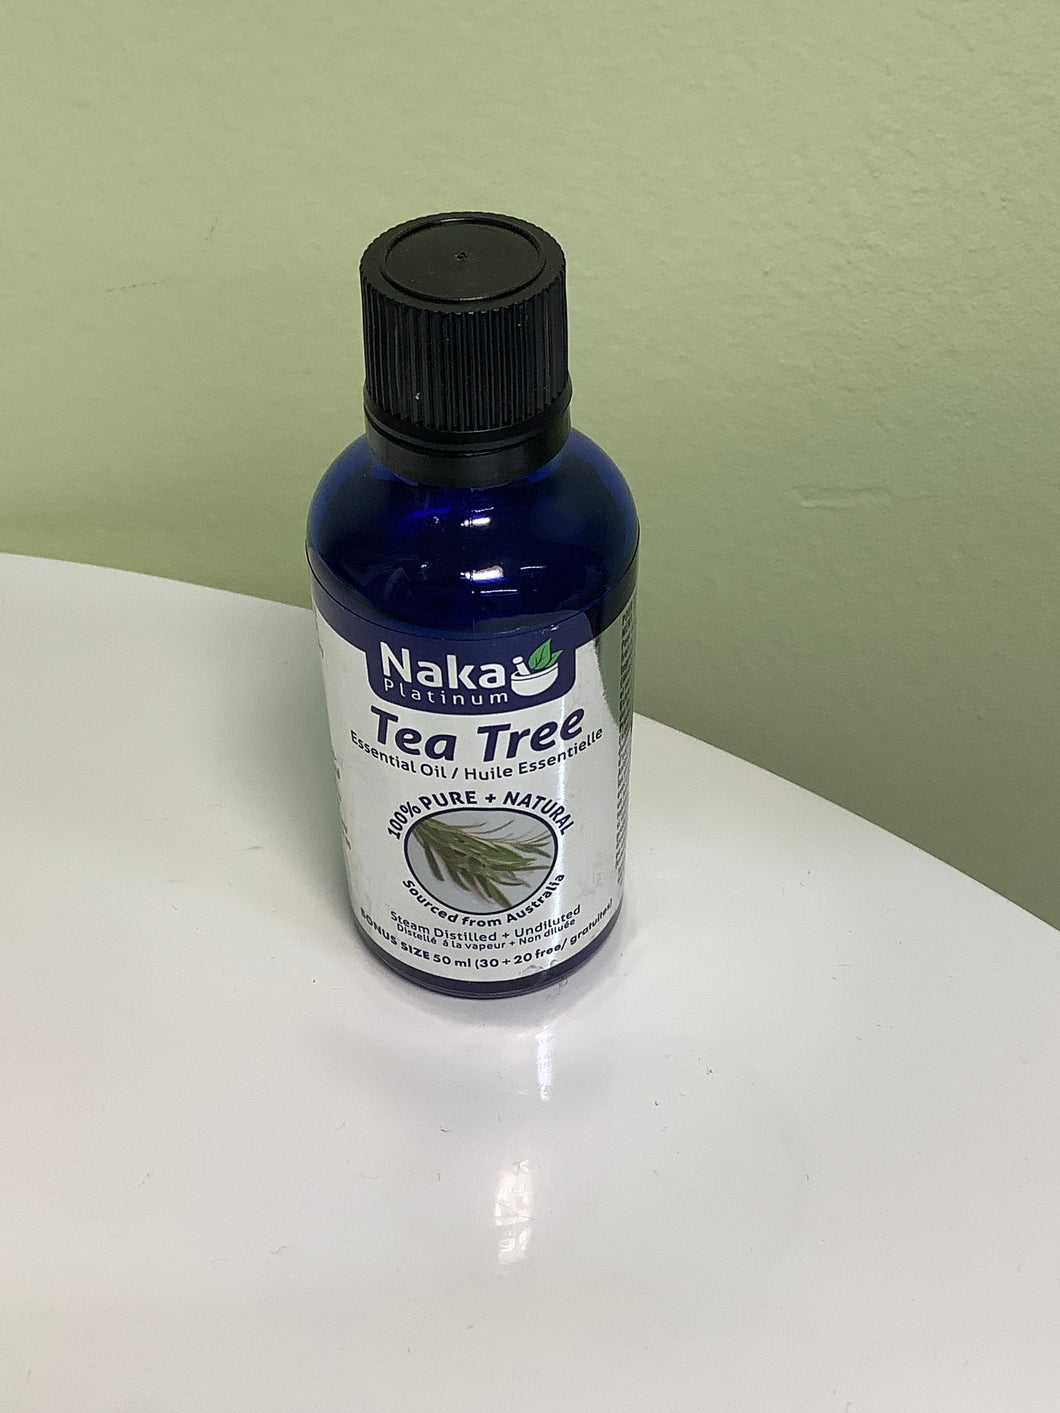 Naka Tea Tree Essential Oil